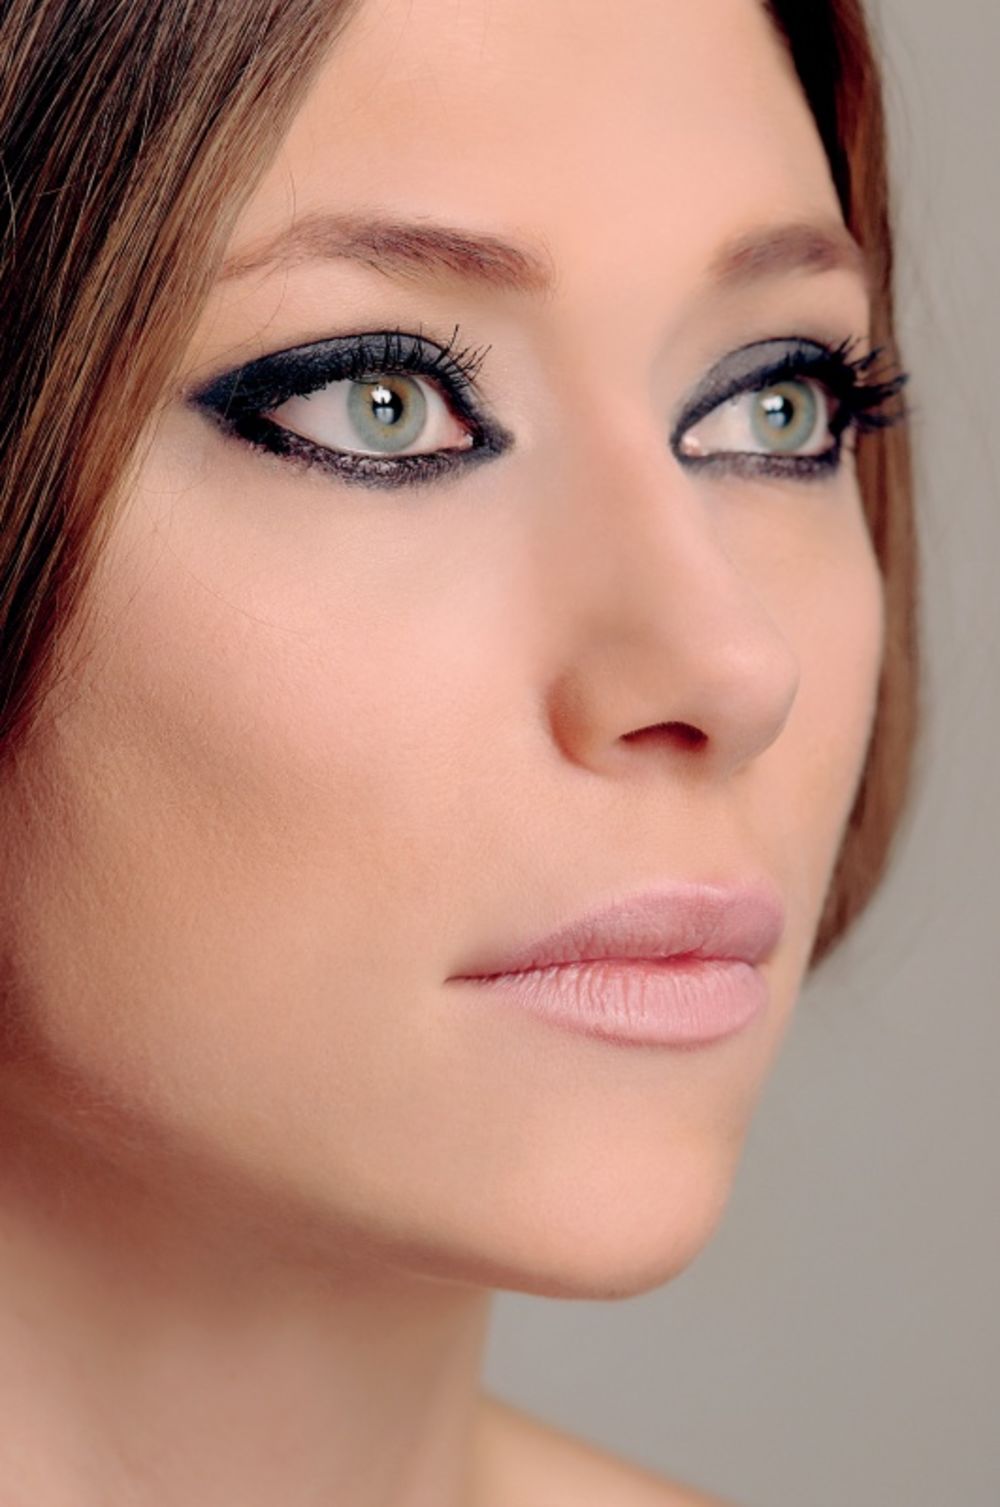 Glumica Branka Katić tvrdi da joj je genetika učinila uslugu i dala prirodno lep ten pa ne mora preterano da upotrebljava šminku i nije opsednuta kozmetičkim tretmanima